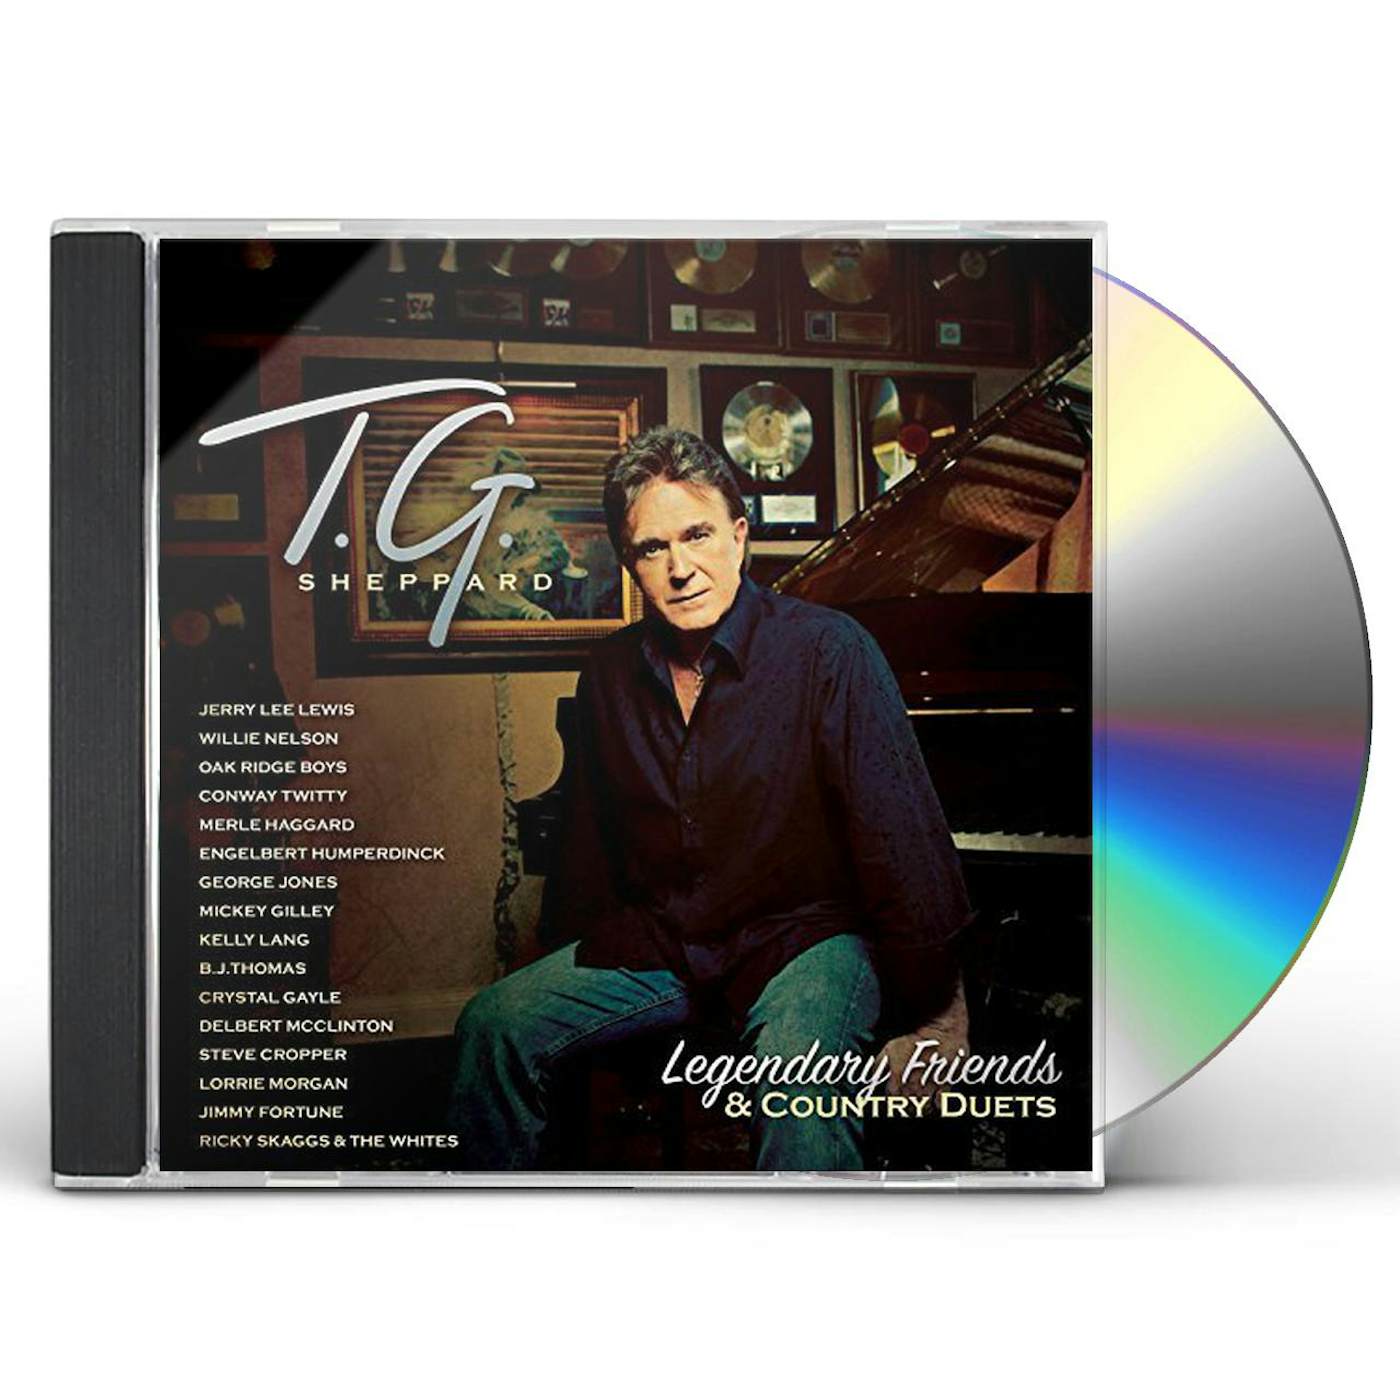 T.G. Sheppard & Friends CD